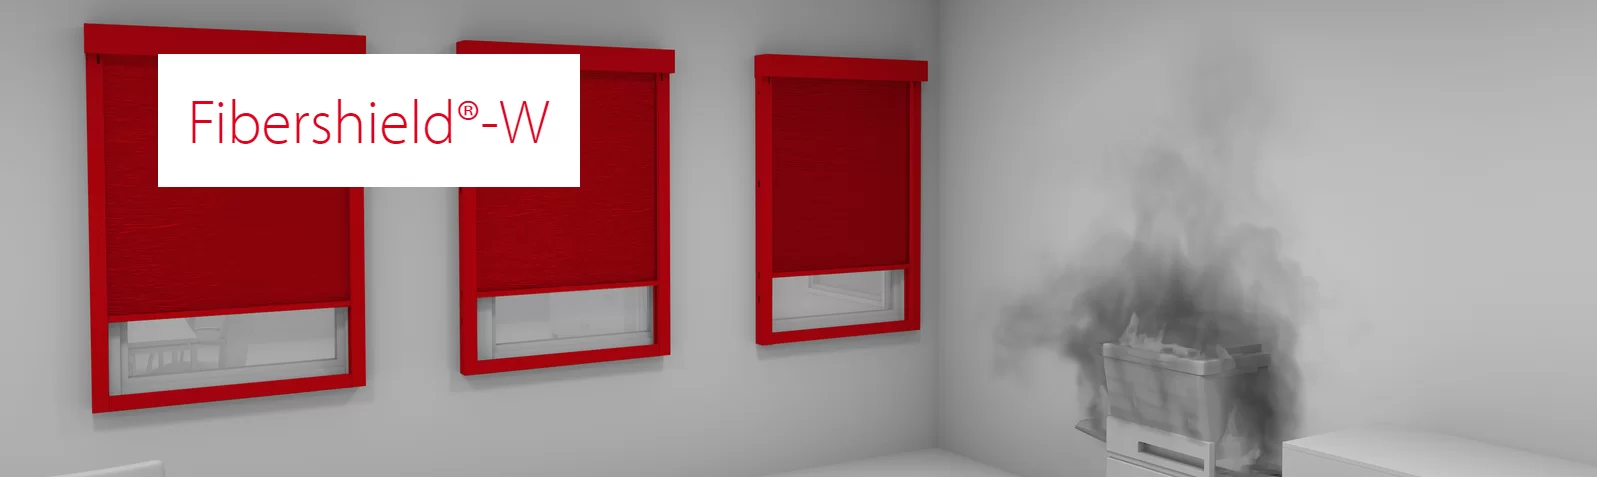 Imagem do tipo mockup mostrando o sentido de fechamento da cortina corta-fogo modelo Fibershield-W